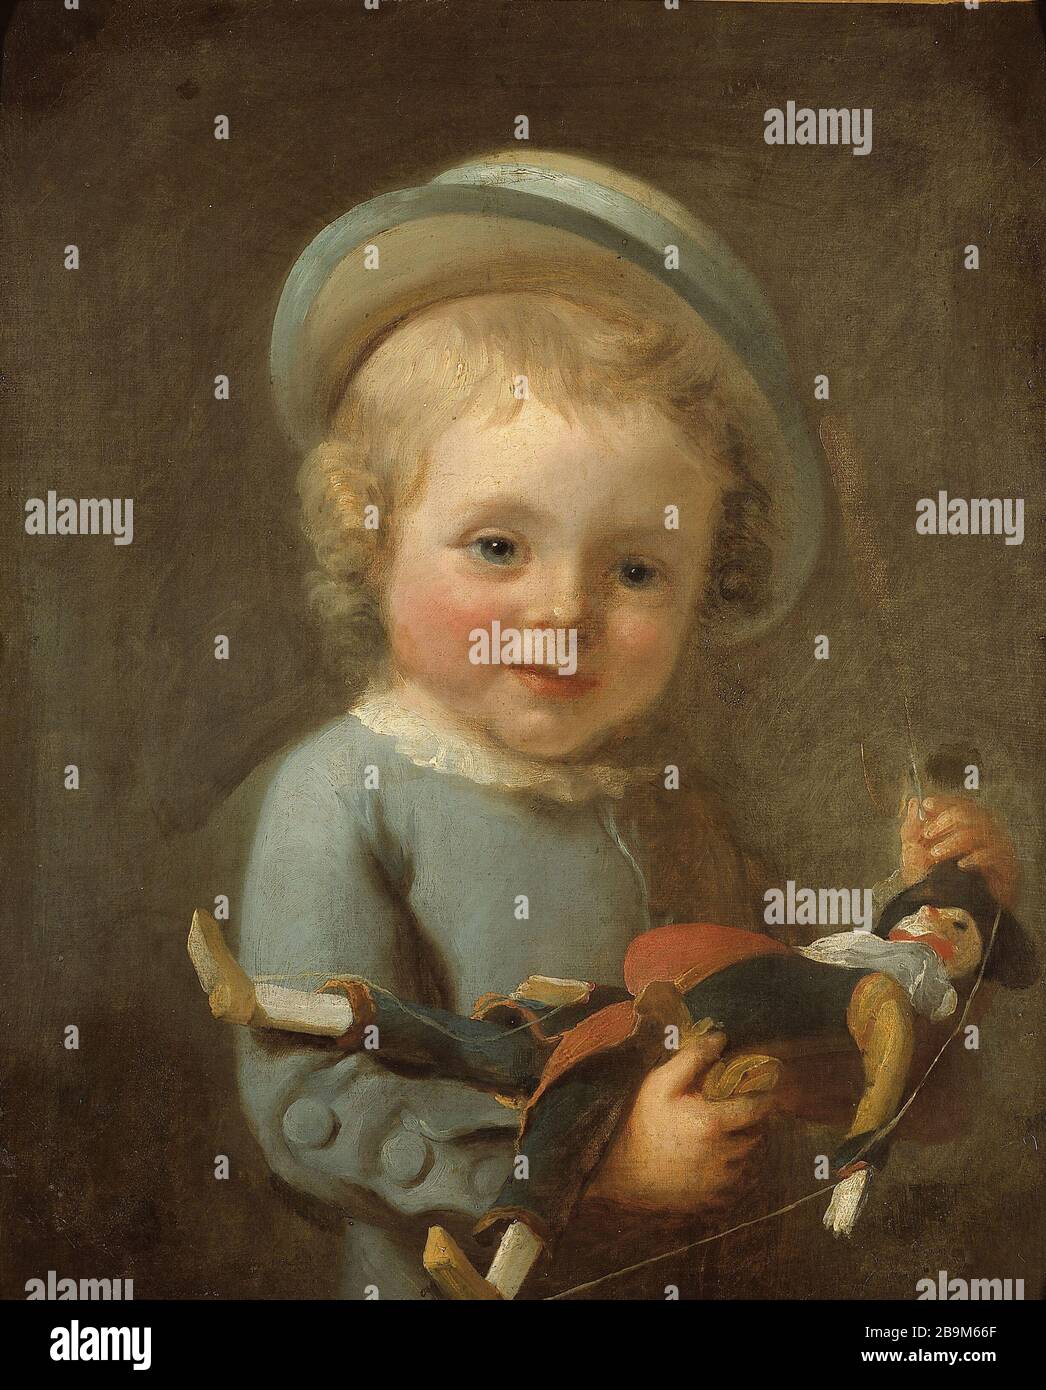 RAGAZZINO CHE PRENDE UN PUGNO 'Petit garçon tenant un polichinelle'. Huile sur toile. Parigi, museo Cognacq-Jay. Foto Stock